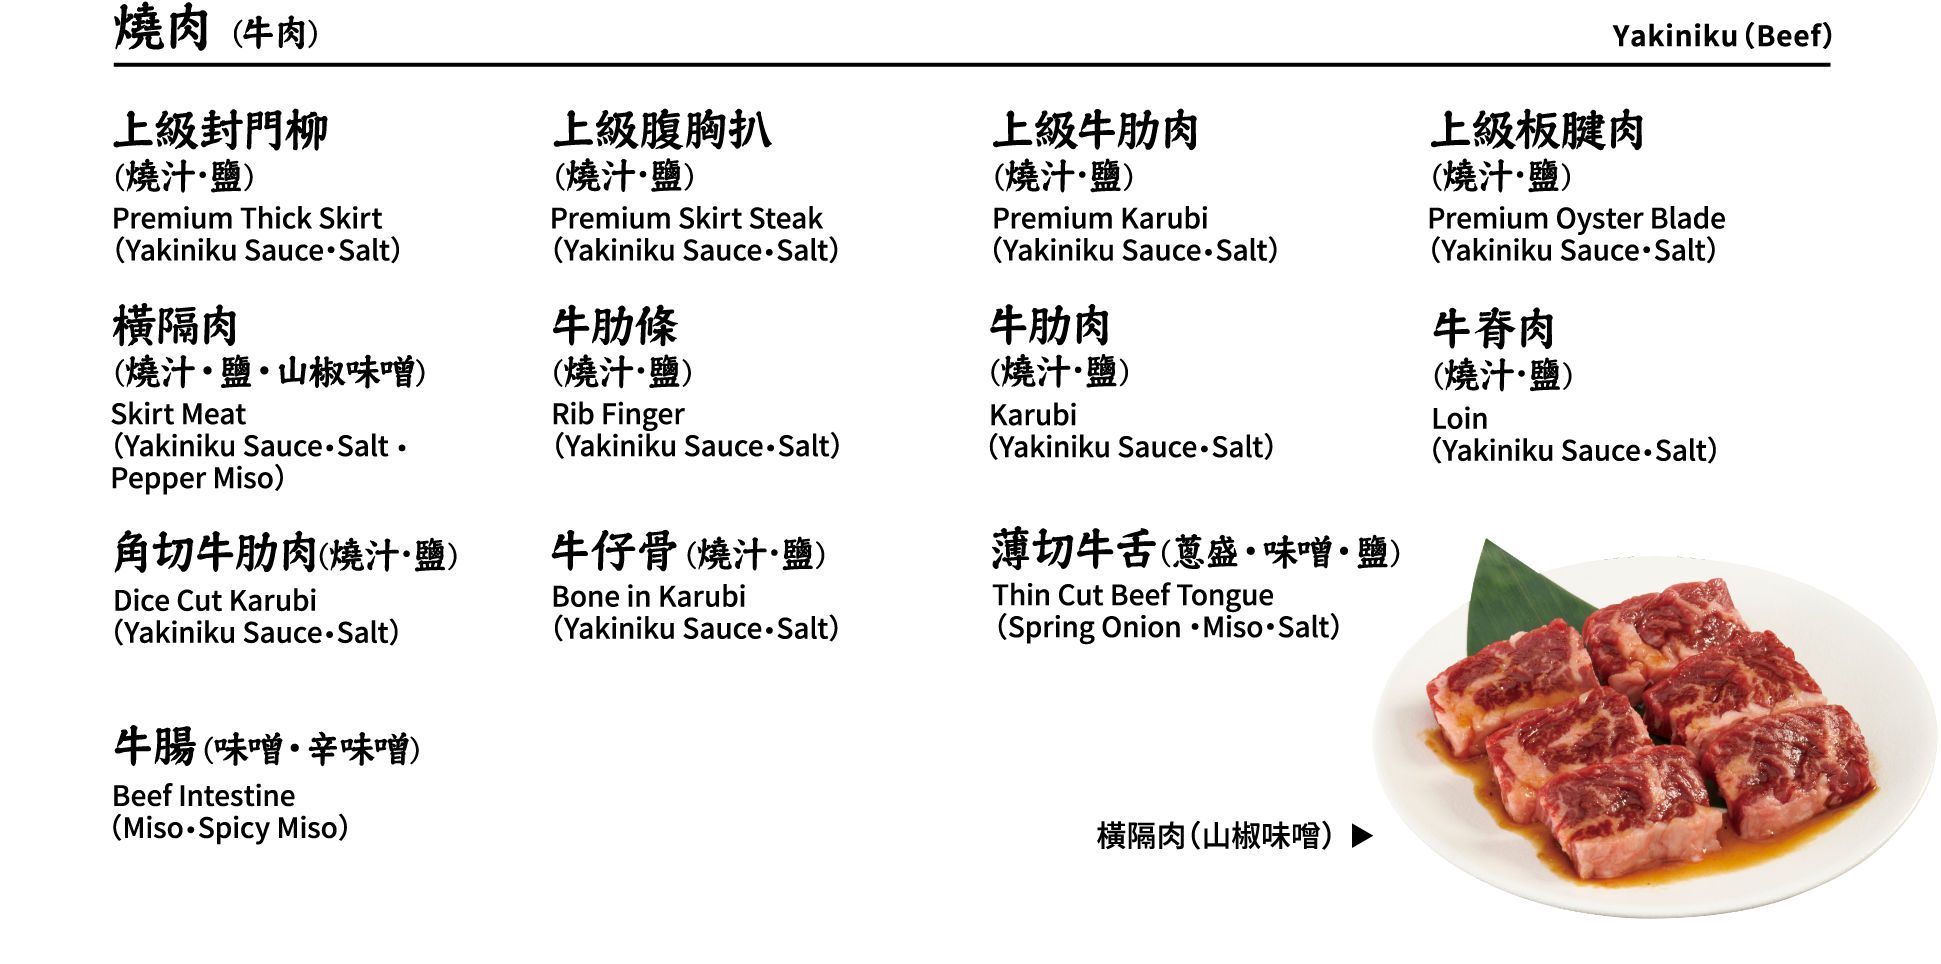 燒肉 (牛肉) Yakiniku（Beef）上級封門柳(燒汁･鹽) 上級腹胸扒(燒汁･鹽) 上級牛肋肉(燒汁･鹽) 上級板腱肉(燒汁･鹽) 橫隔肉(燒汁・鹽・山椒味噌) 牛肋條(燒汁･鹽) 牛肋肉(燒汁･鹽) 牛脊肉(燒汁･鹽) 角切牛肋肉(燒汁･鹽) 牛仔骨(燒汁･鹽) 薄切牛舌(蔥盛・味噌・鹽) 牛腸(味噌・辛味噌) Premium Thick Skirt（Yakiniku Sauce・Salt）, Premium Skirt Steak（Yakiniku Sauce・Salt）, Premium Karubi（Yakiniku Sauce・Salt）, Premium Oyster Blade （Yakiniku Sauce・Salt）, Skirt Meat （Yakiniku Sauce・Salt ・Pepper Miso）, Rib Finger（Yakiniku Sauce・Salt）, Karubi（Yakiniku Sauce・Salt）, Loin（Yakiniku Sauce・Salt）, Dice Cut Karubi（Yakiniku Sauce・Salt）, Bone in Karubi（Yakiniku Sauce・Salt）, Thin Cut Beef Tongue（Spring Onion ・Miso・Salt）, Beef Intestine（Miso・Spicy Miso） 